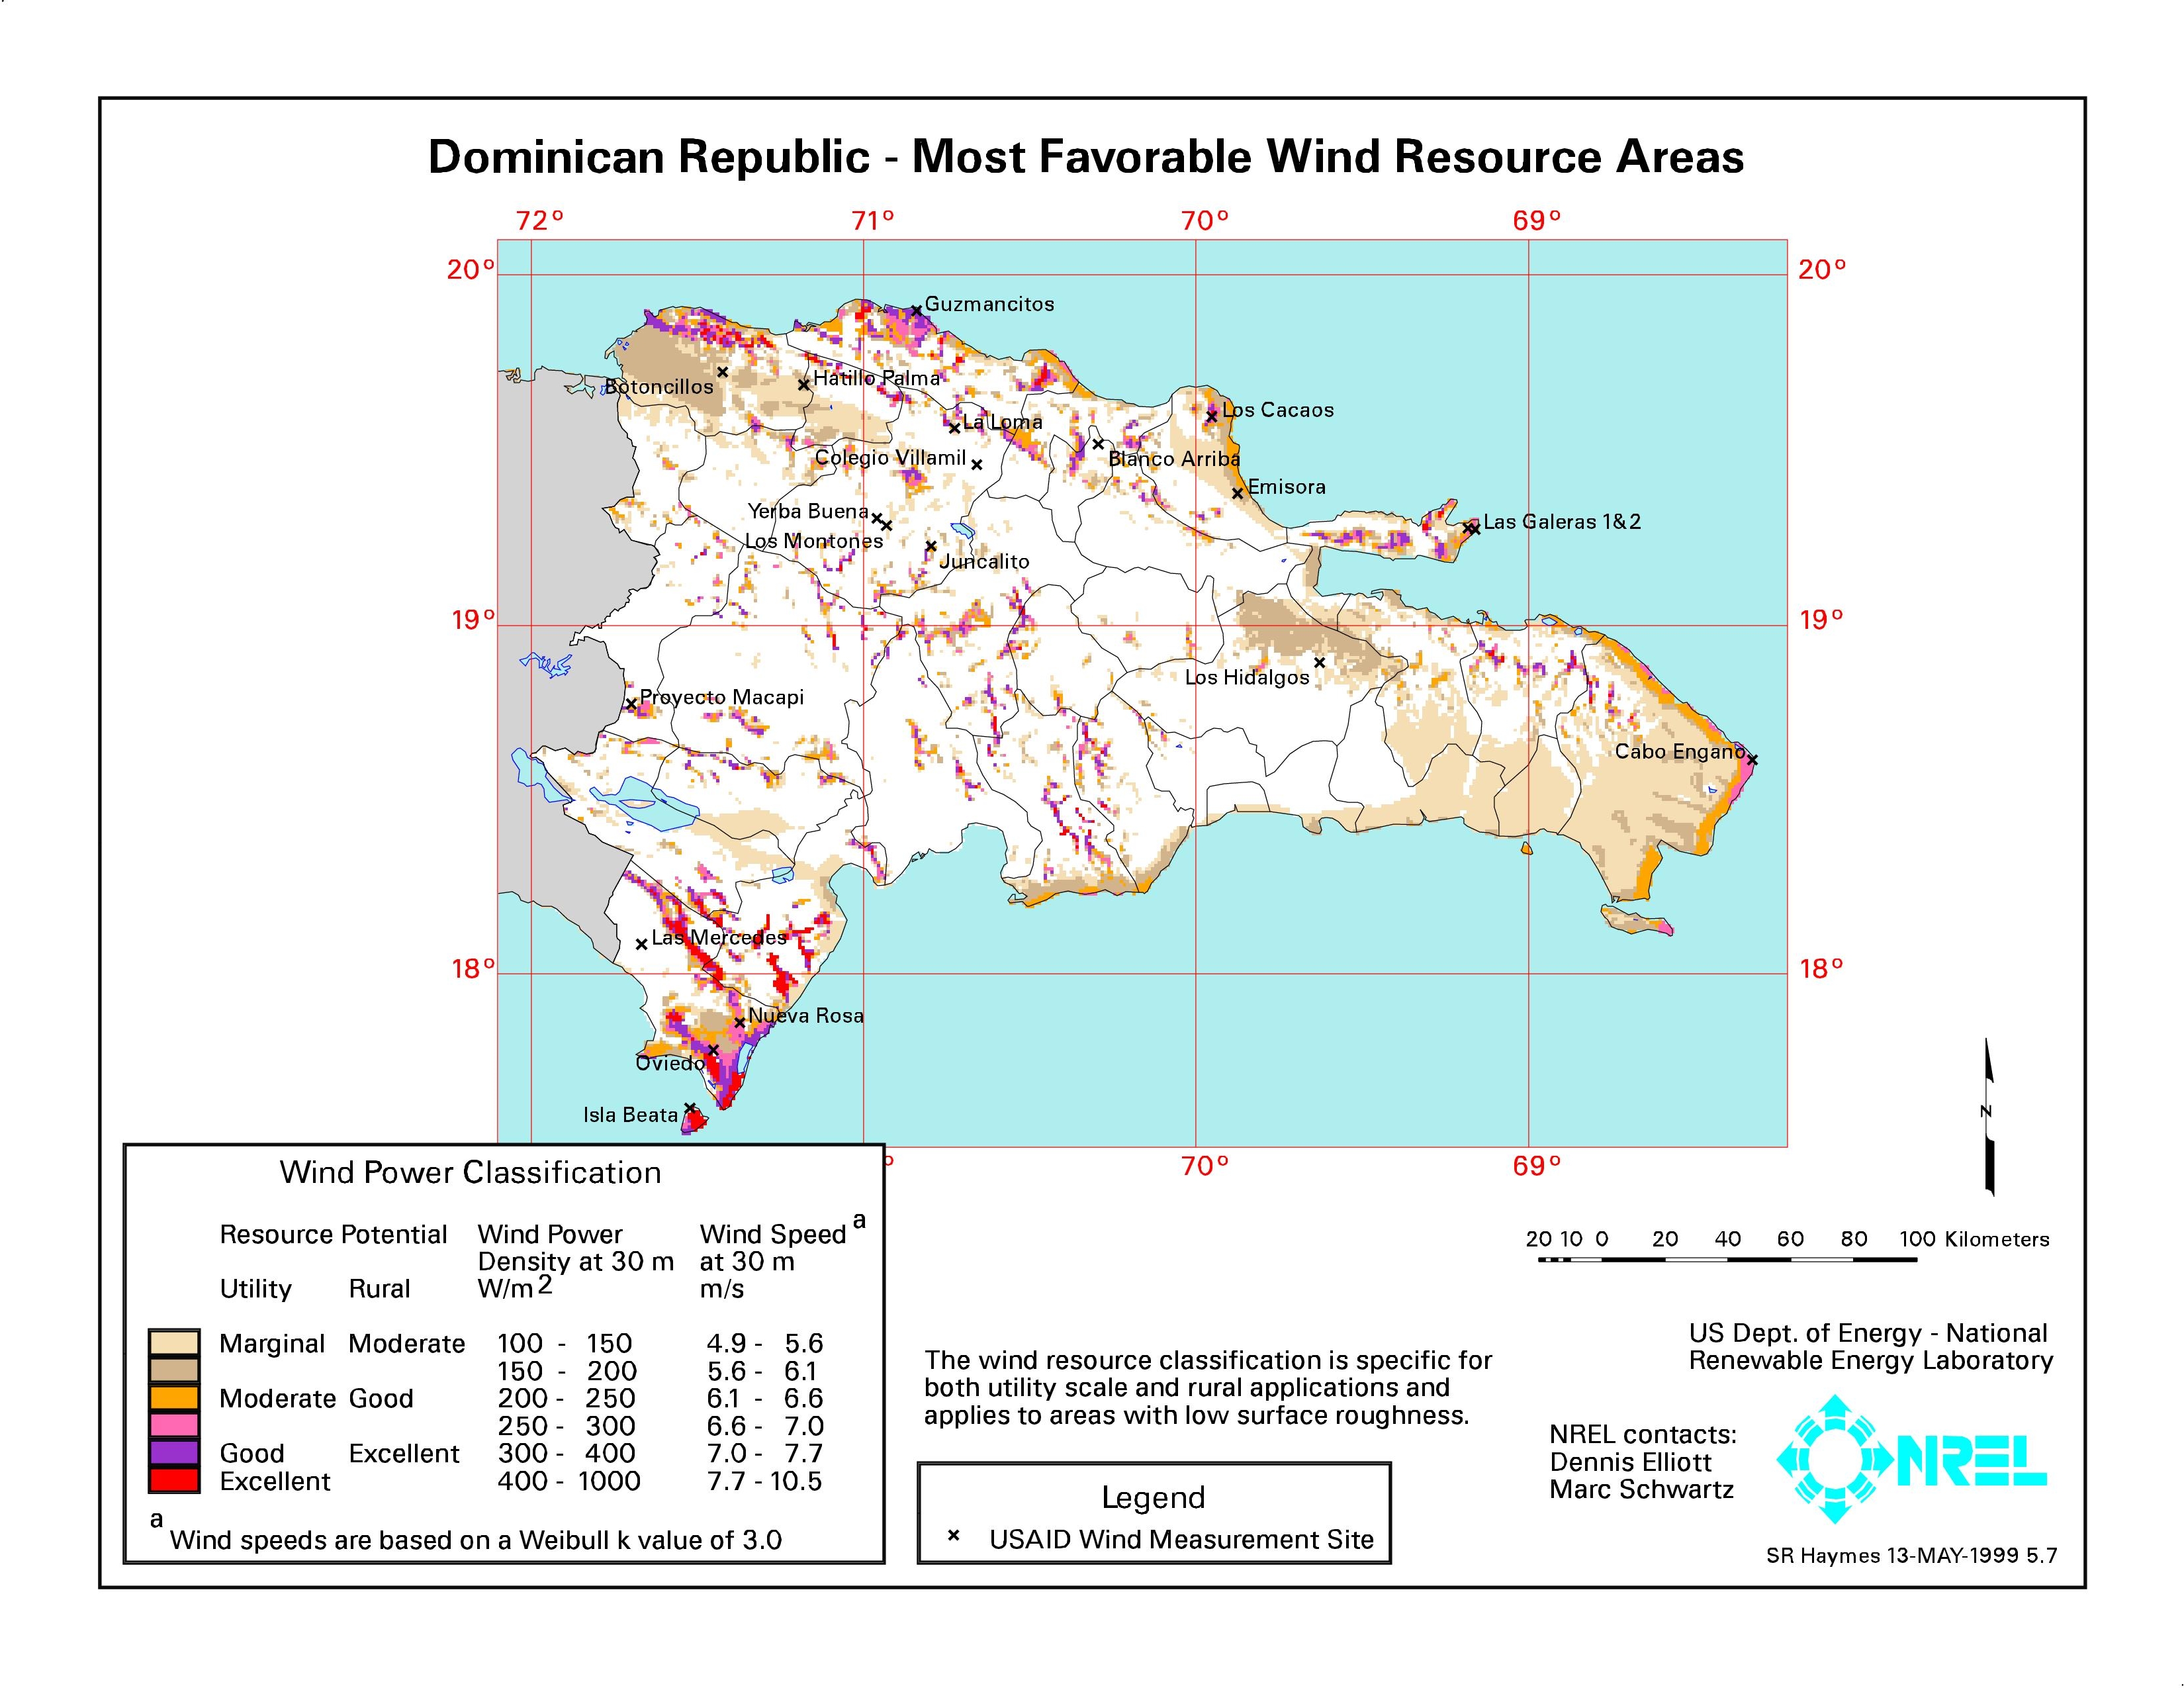 La eólica en República Dominicana